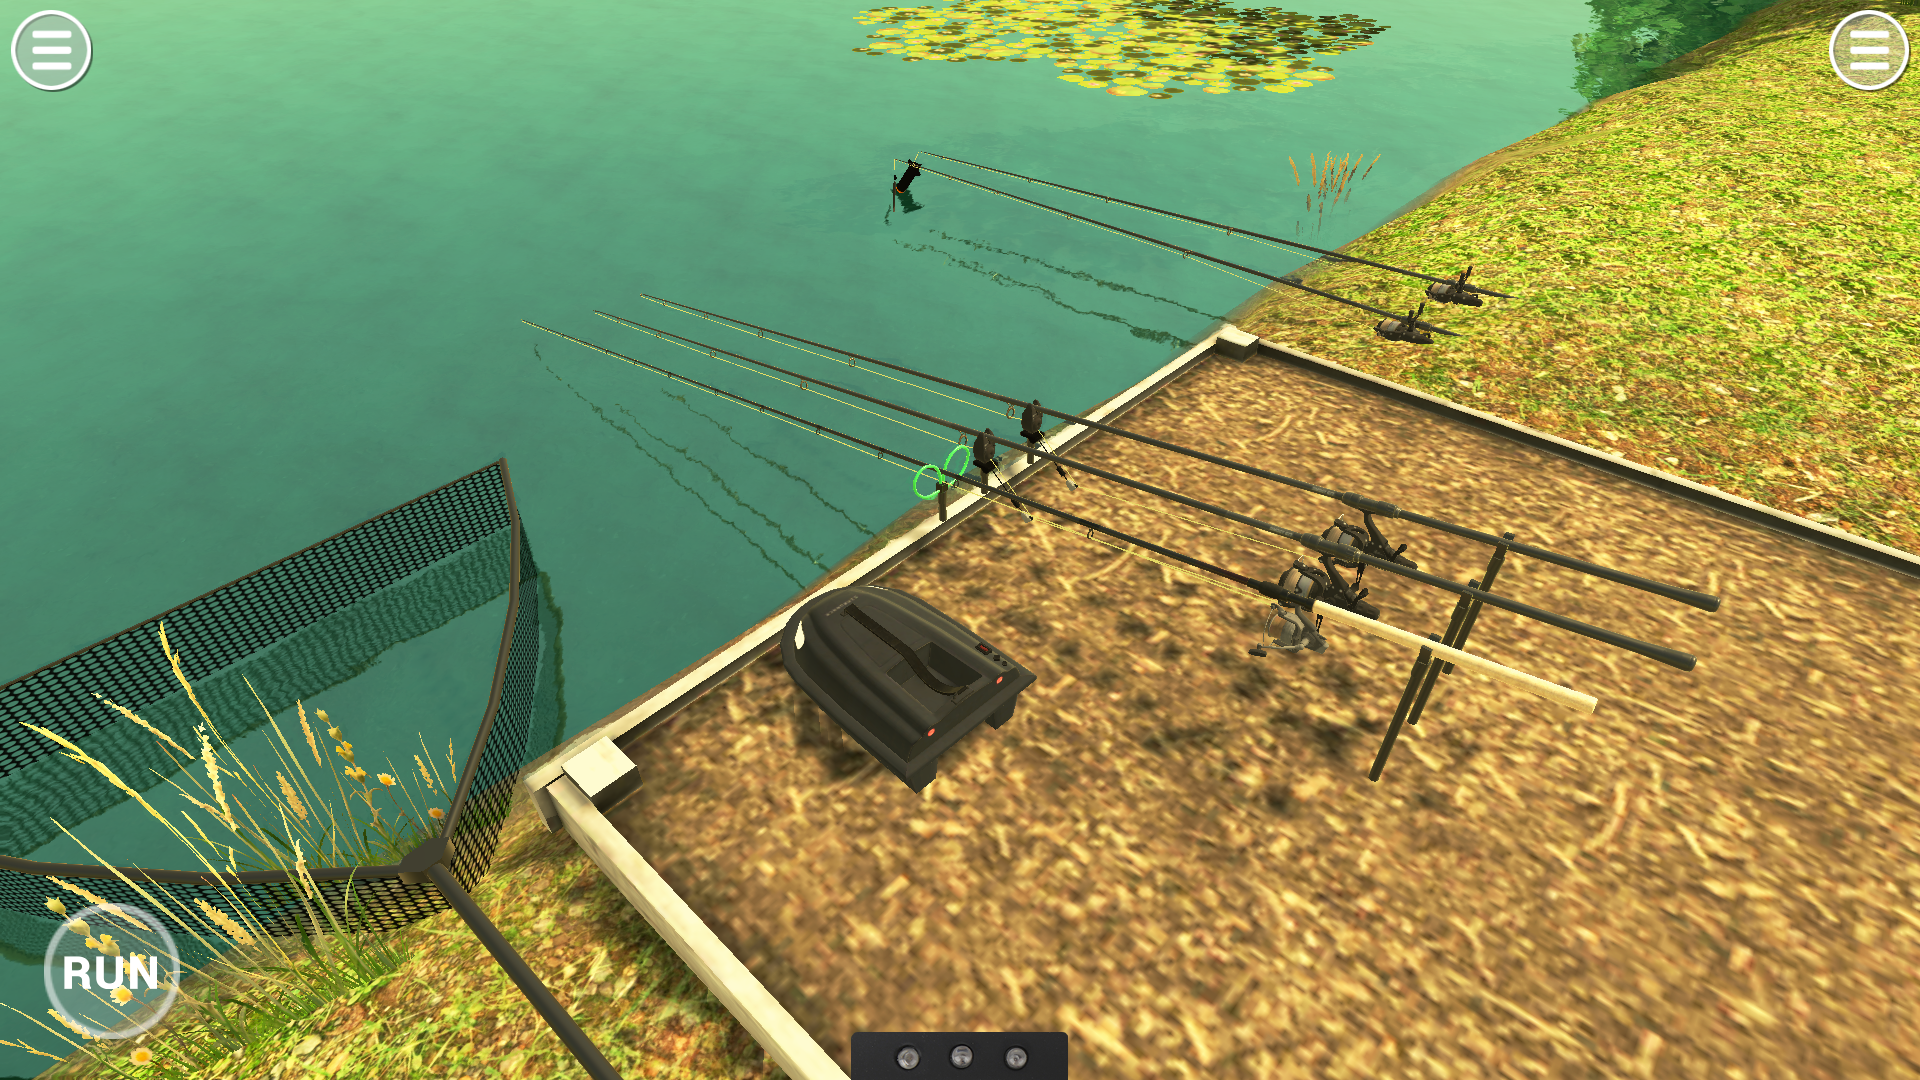 Screenshot 1 of Аркадная рыбалка на карпа - щука, окунь, сом и многое другое 